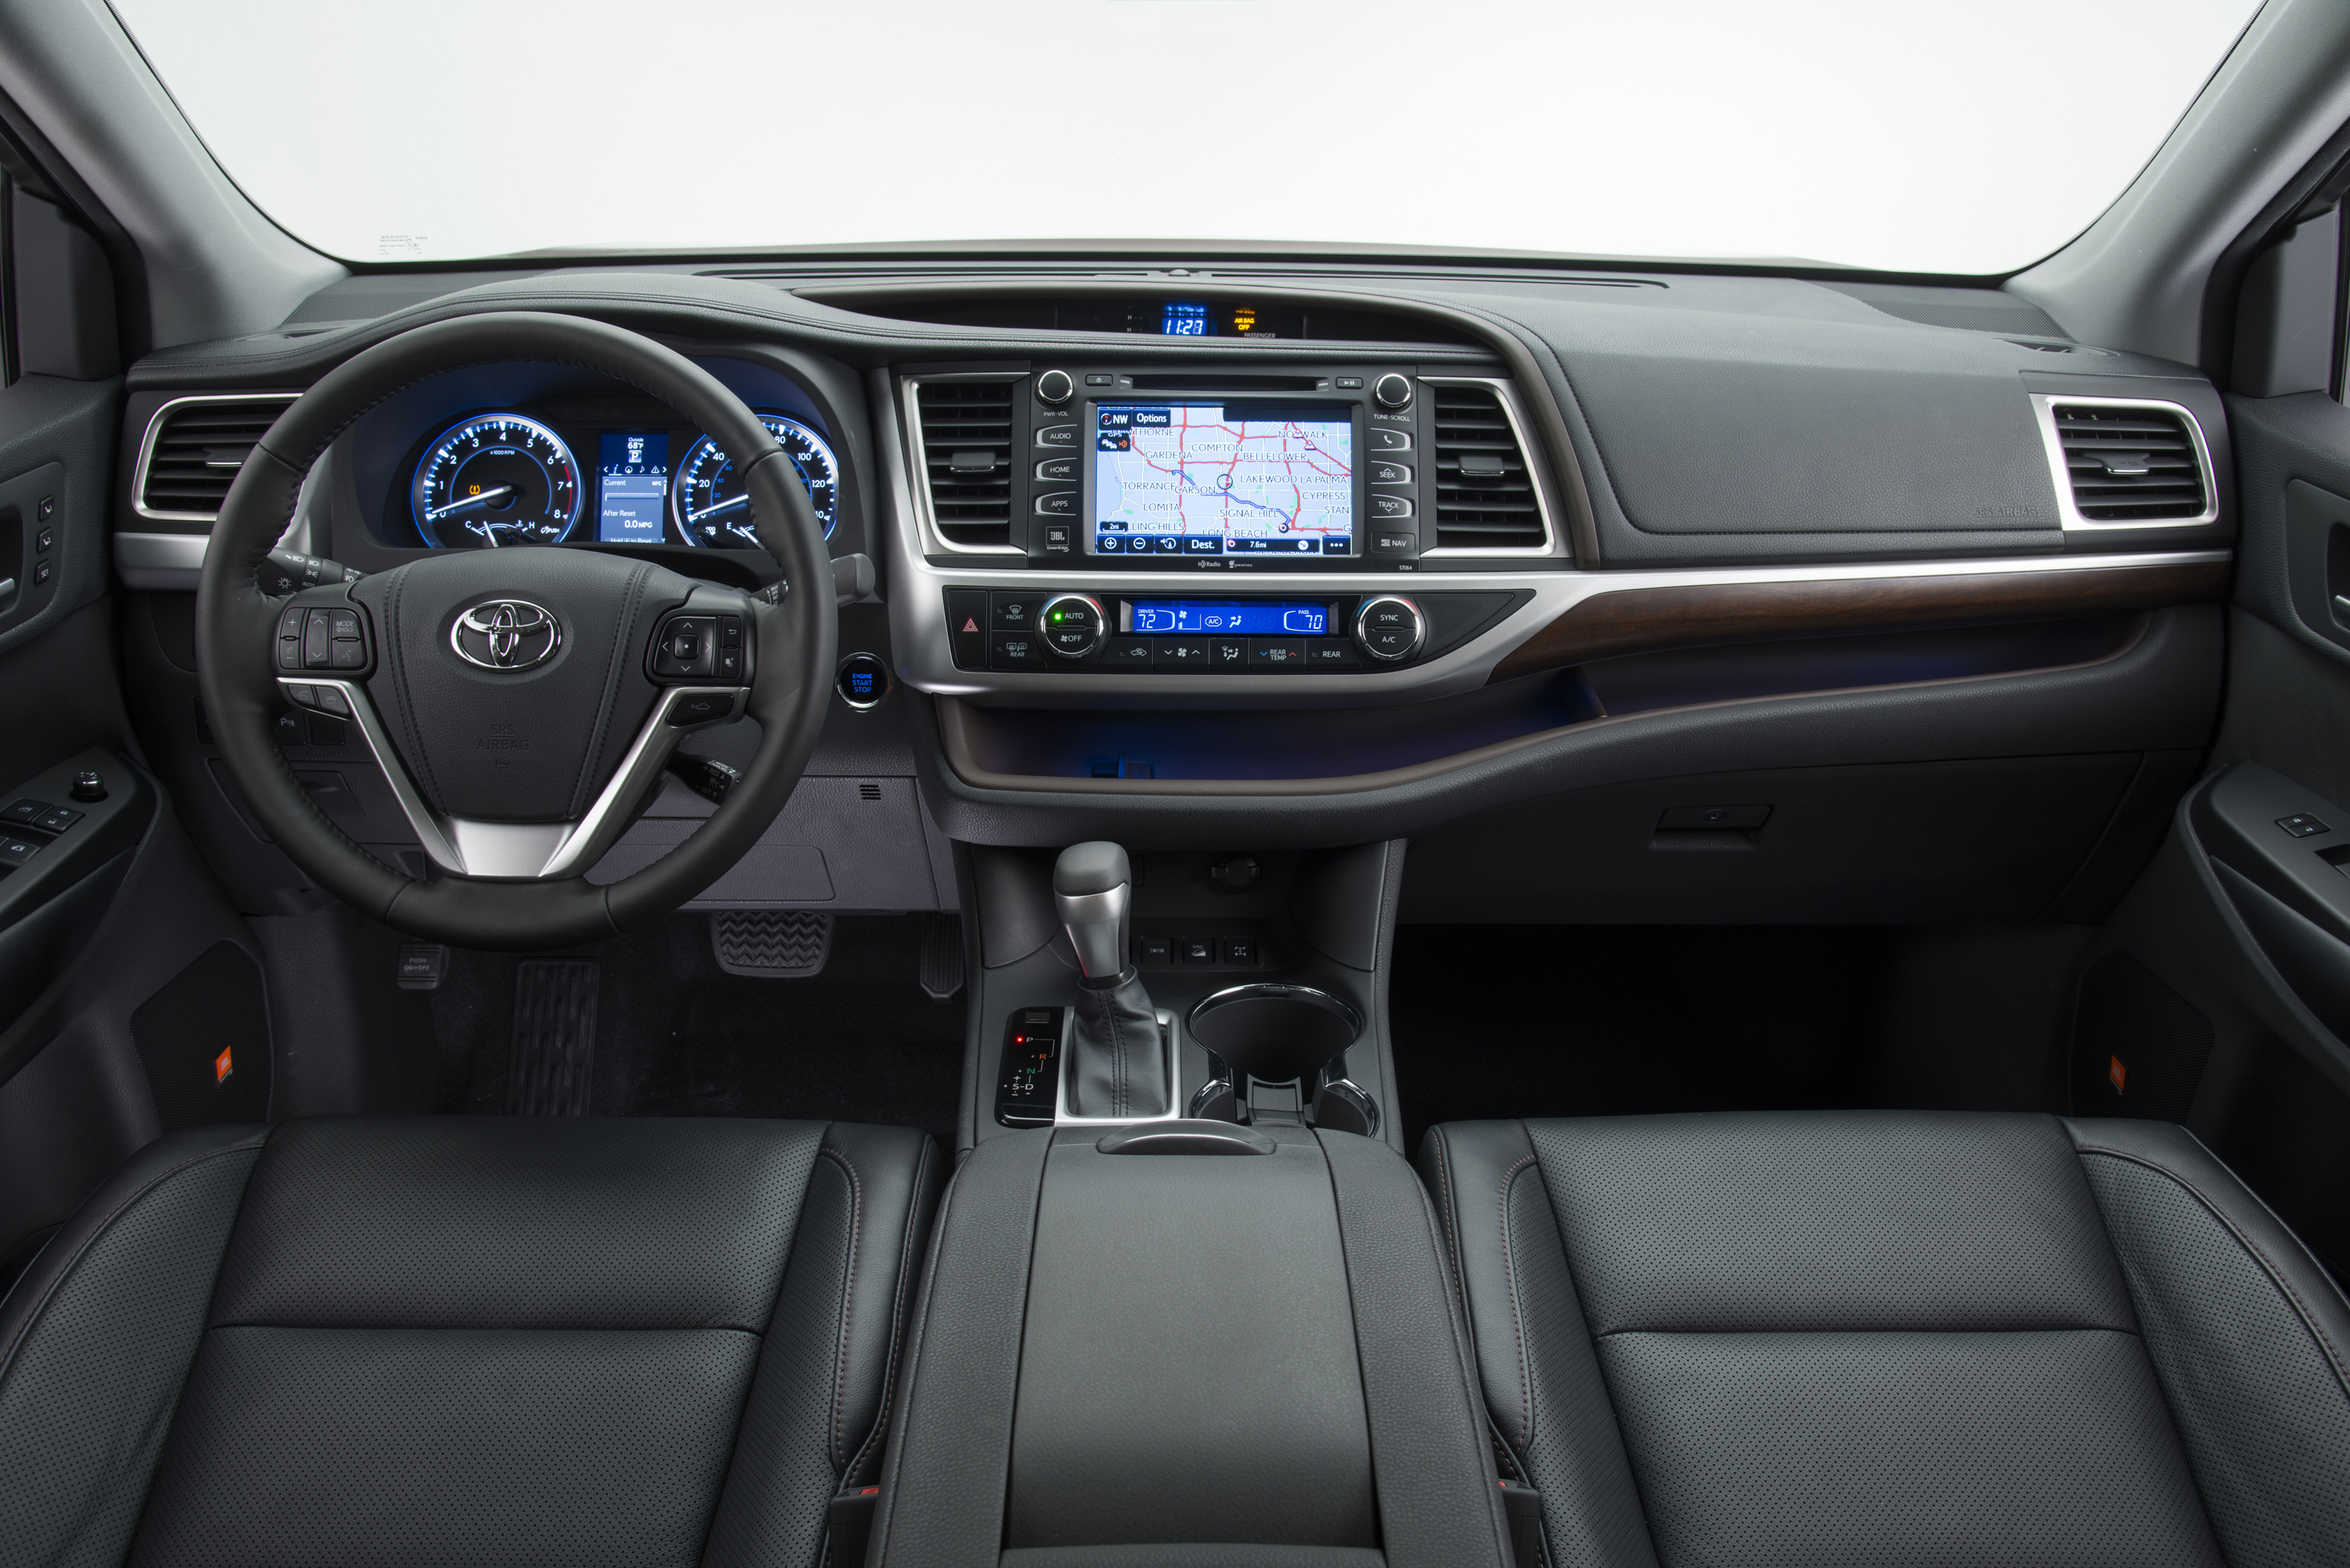 2016 Toyota Highlander Limited Platinum AWD: Let The Journey Begin